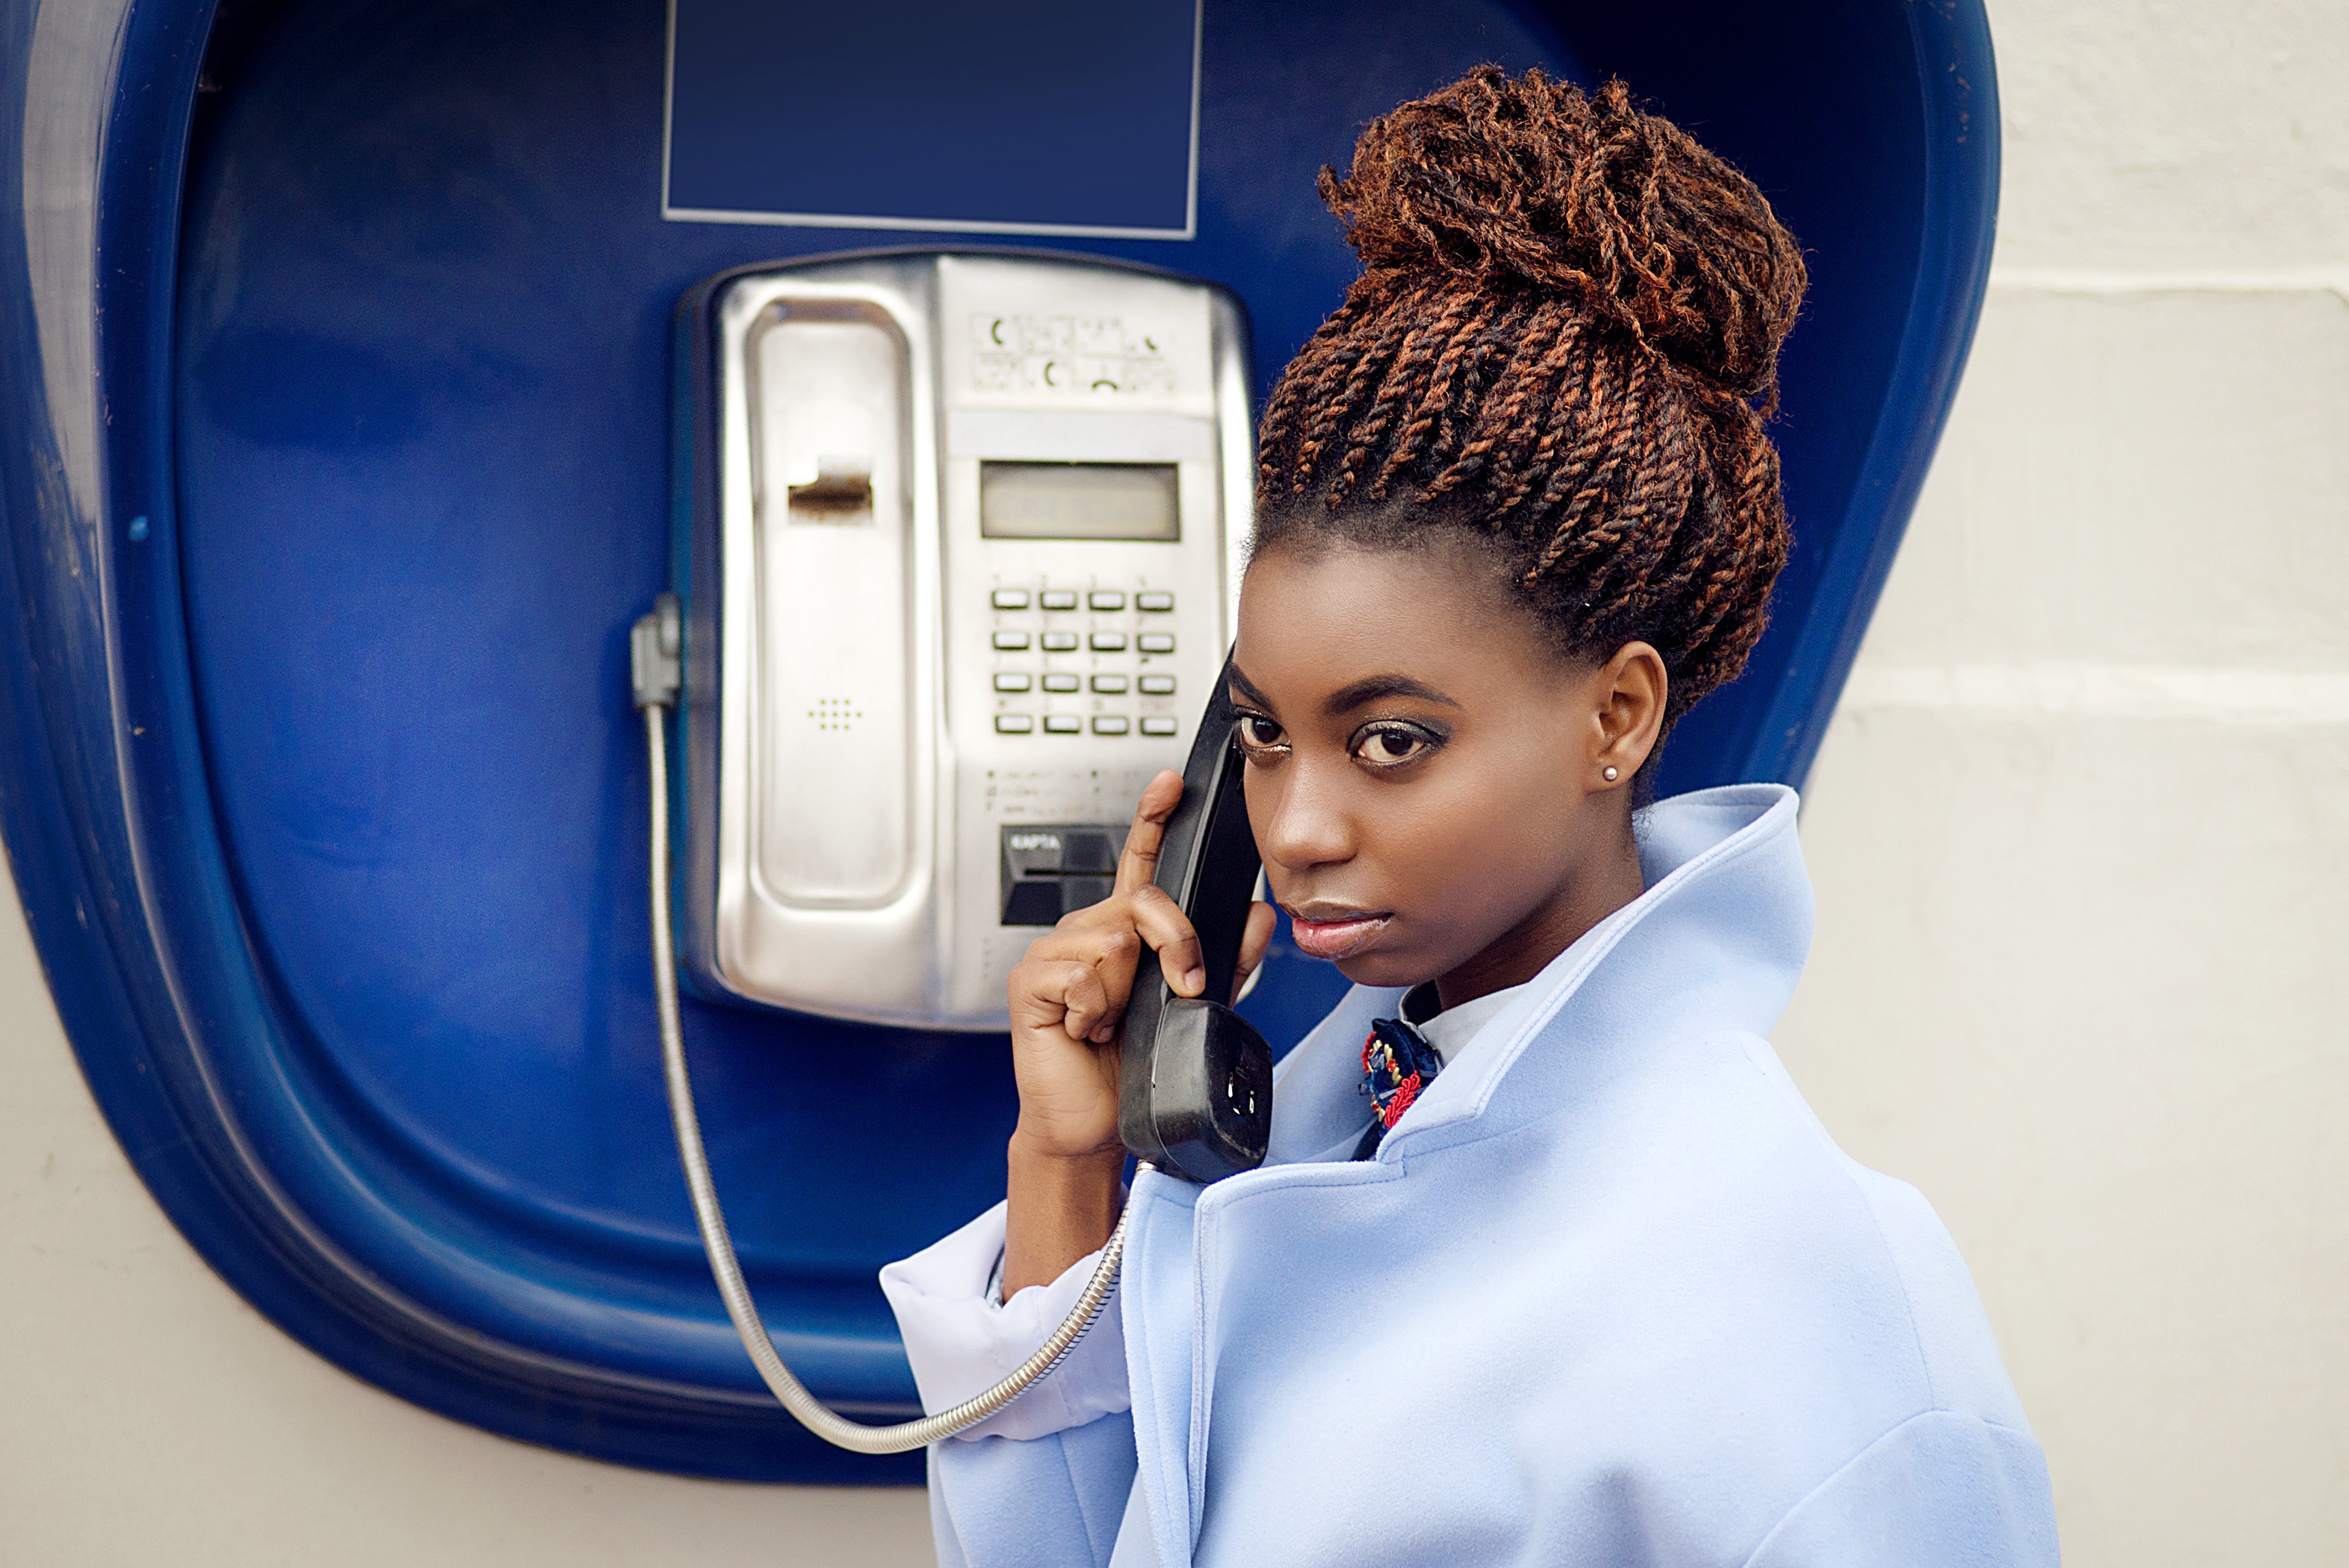 Une jeune fille utilise un téléphone public | Photo : Shutterstock